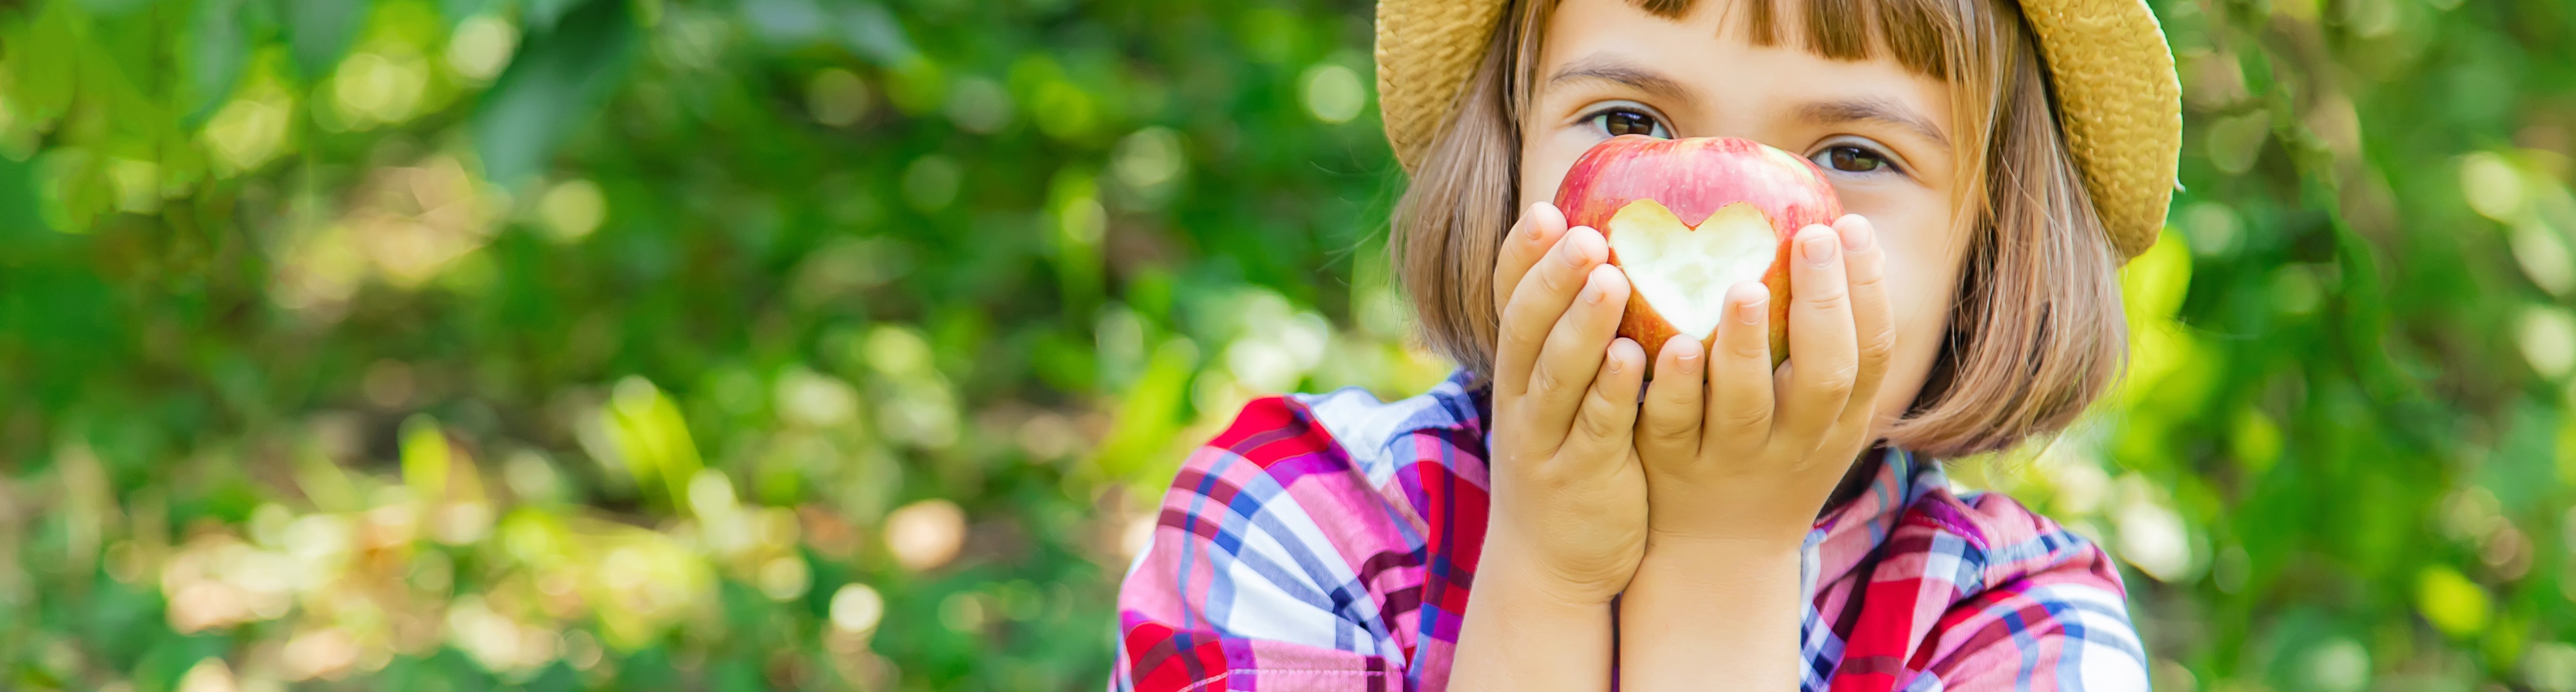 Petite fille tenant une pomme devant son visage